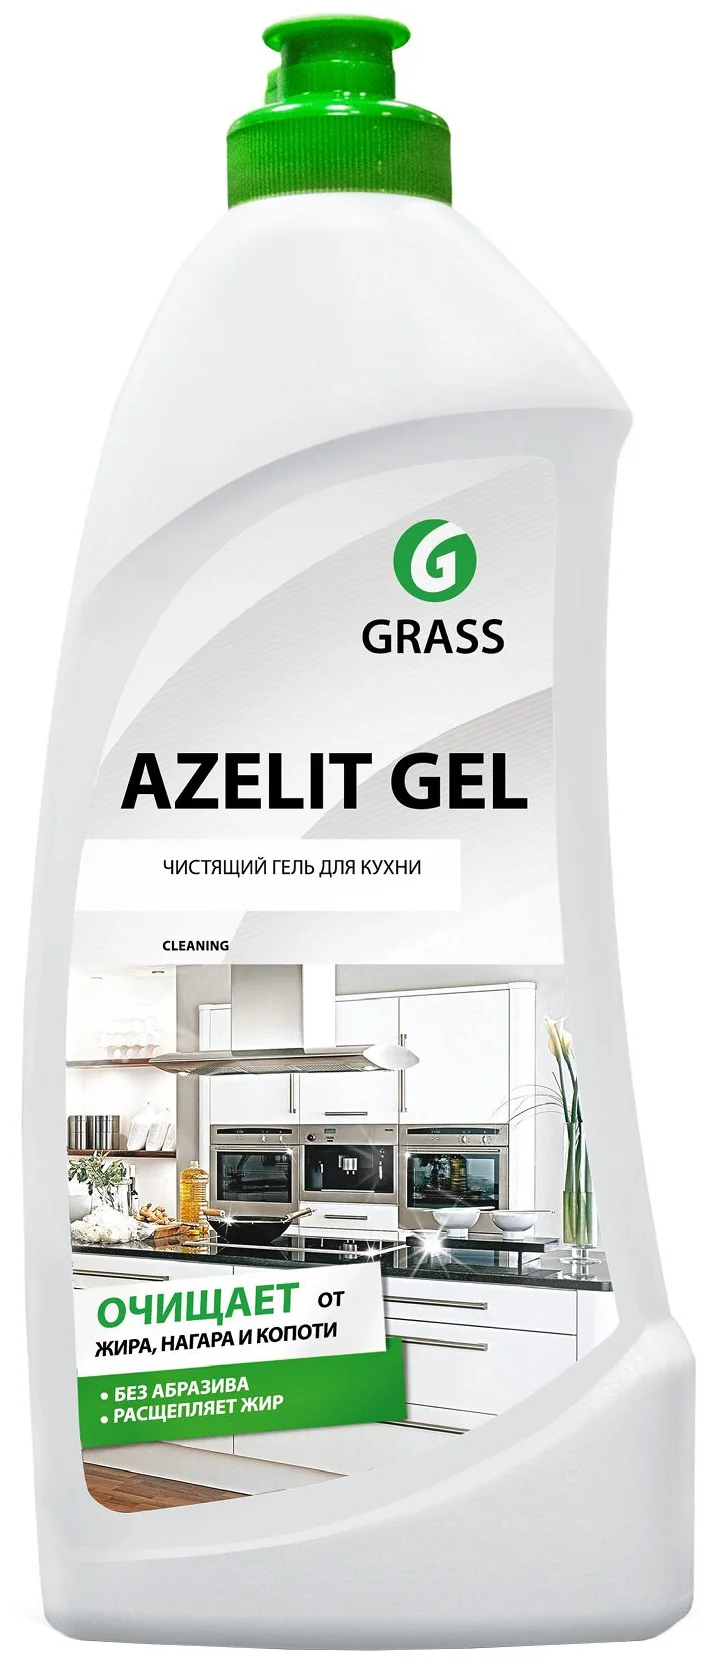 Гель для кухни Azelit Анти-жир Grass - назначение: для металлических поверхностей, для стеклокерамики, для эмалированных поверхностей, для СВЧ, для кухонных плит, для духовых шкафов, для грилей, для удаления застарелого гриля